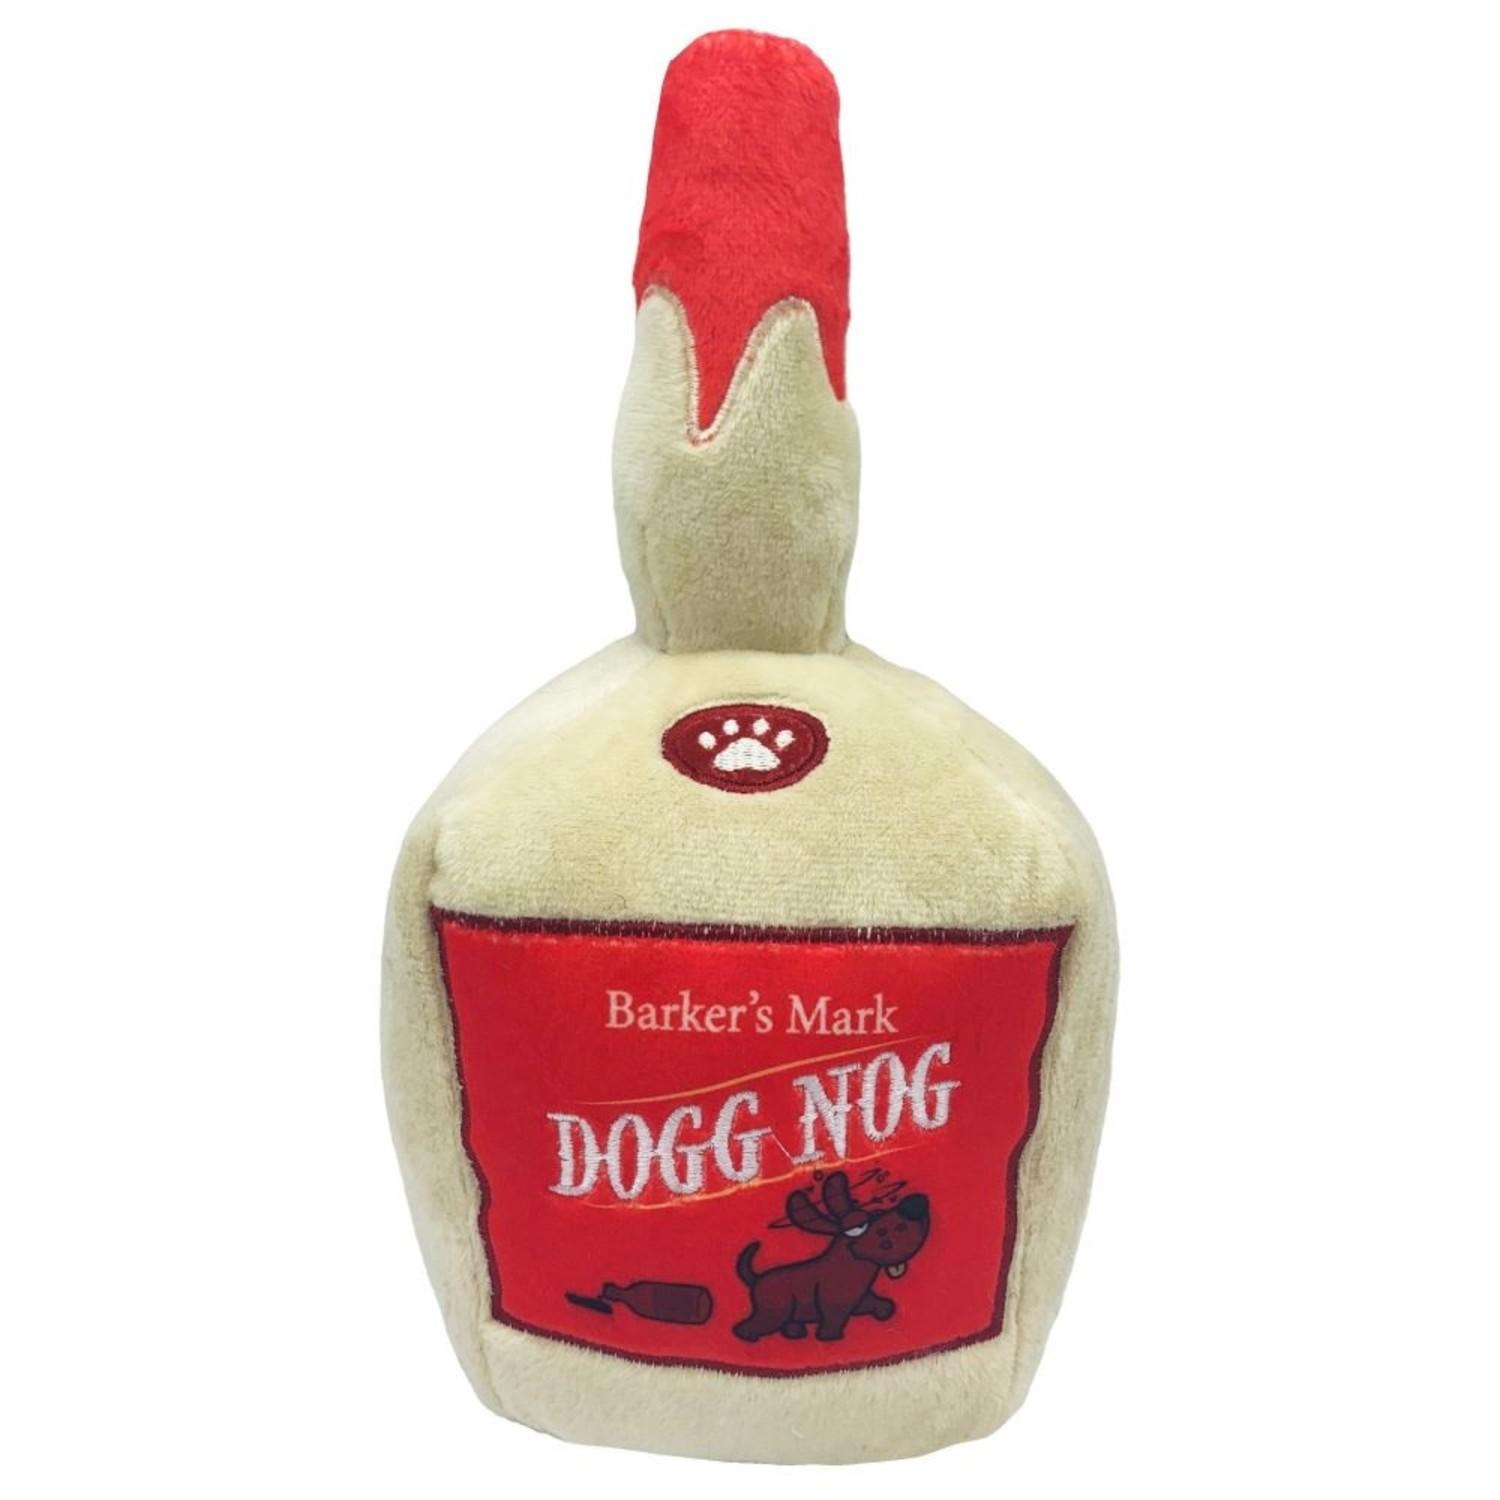 Lulubelles Holiday Power Plush Dog Toy - Dogg Nog